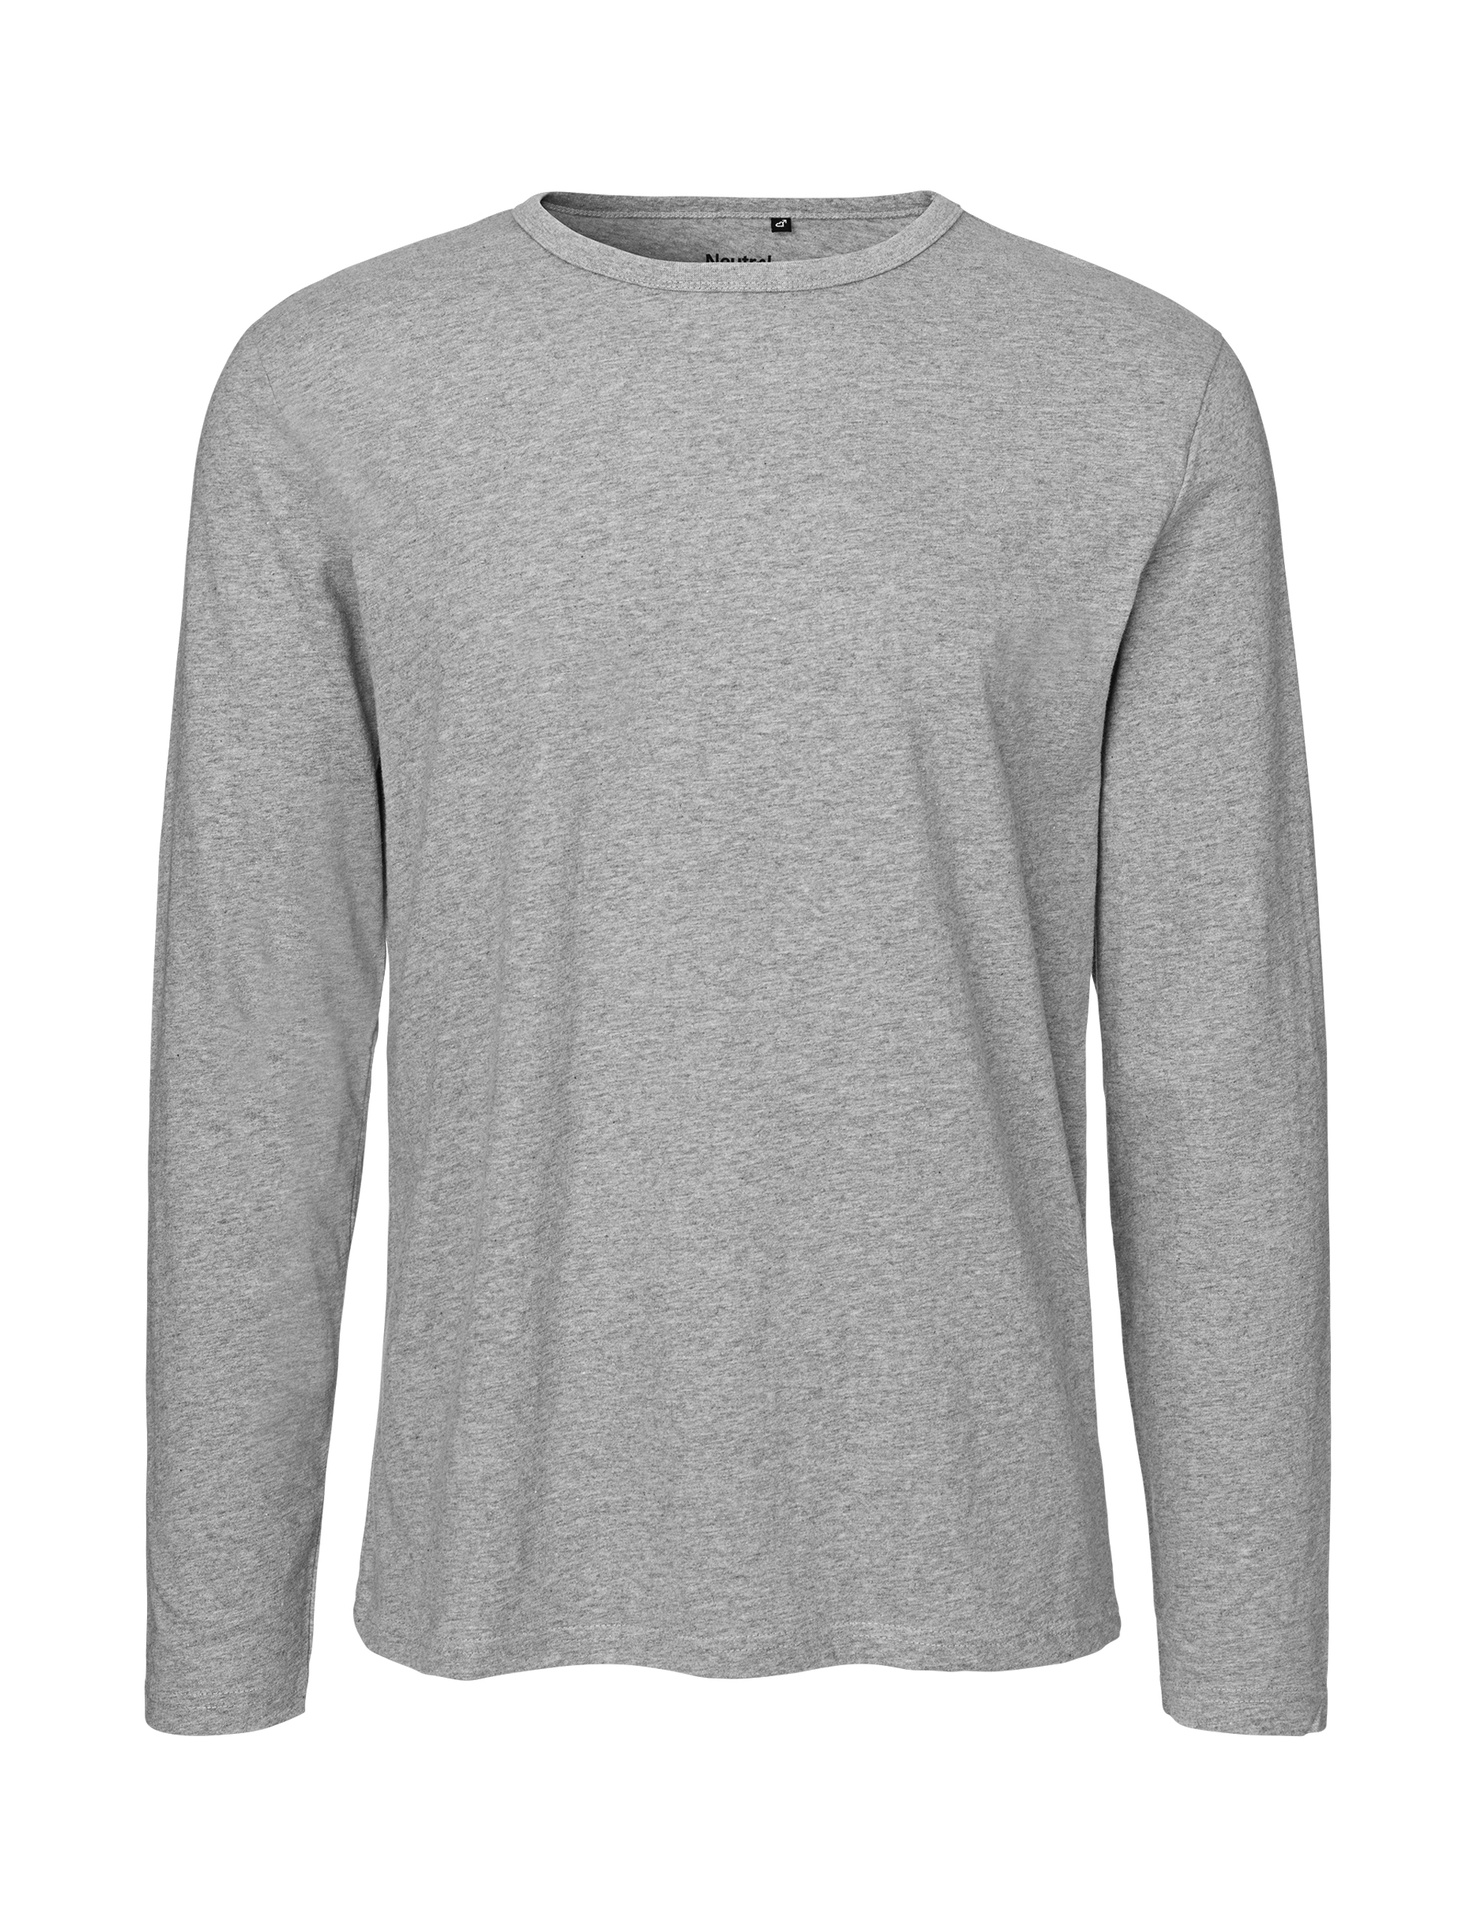 [PR/02402] Mens Long Sleeve T-Shirt (Sport Grey 21, 2XL)